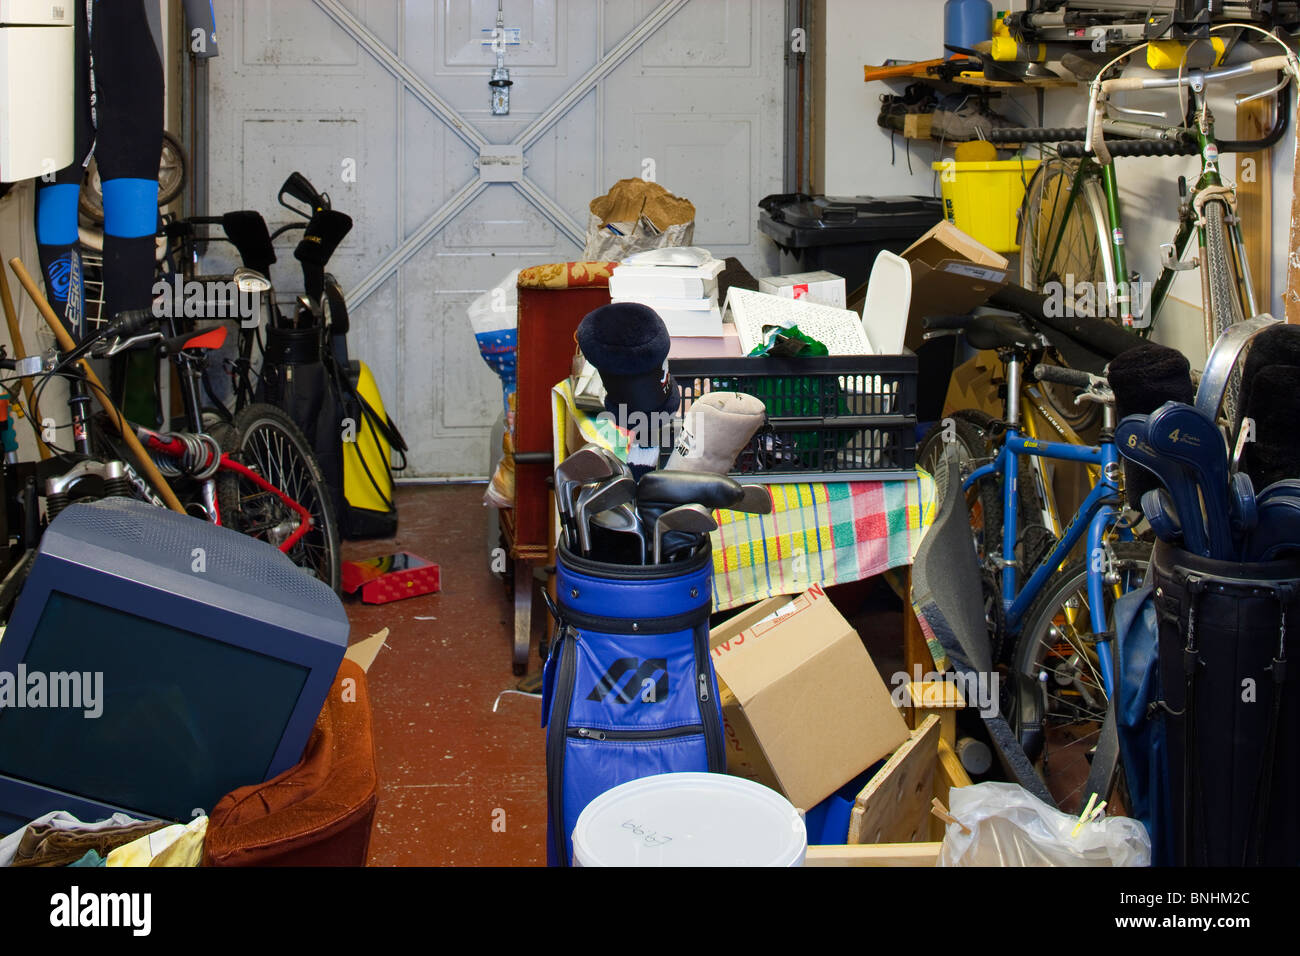 Interior of domestic garage Stock Photo